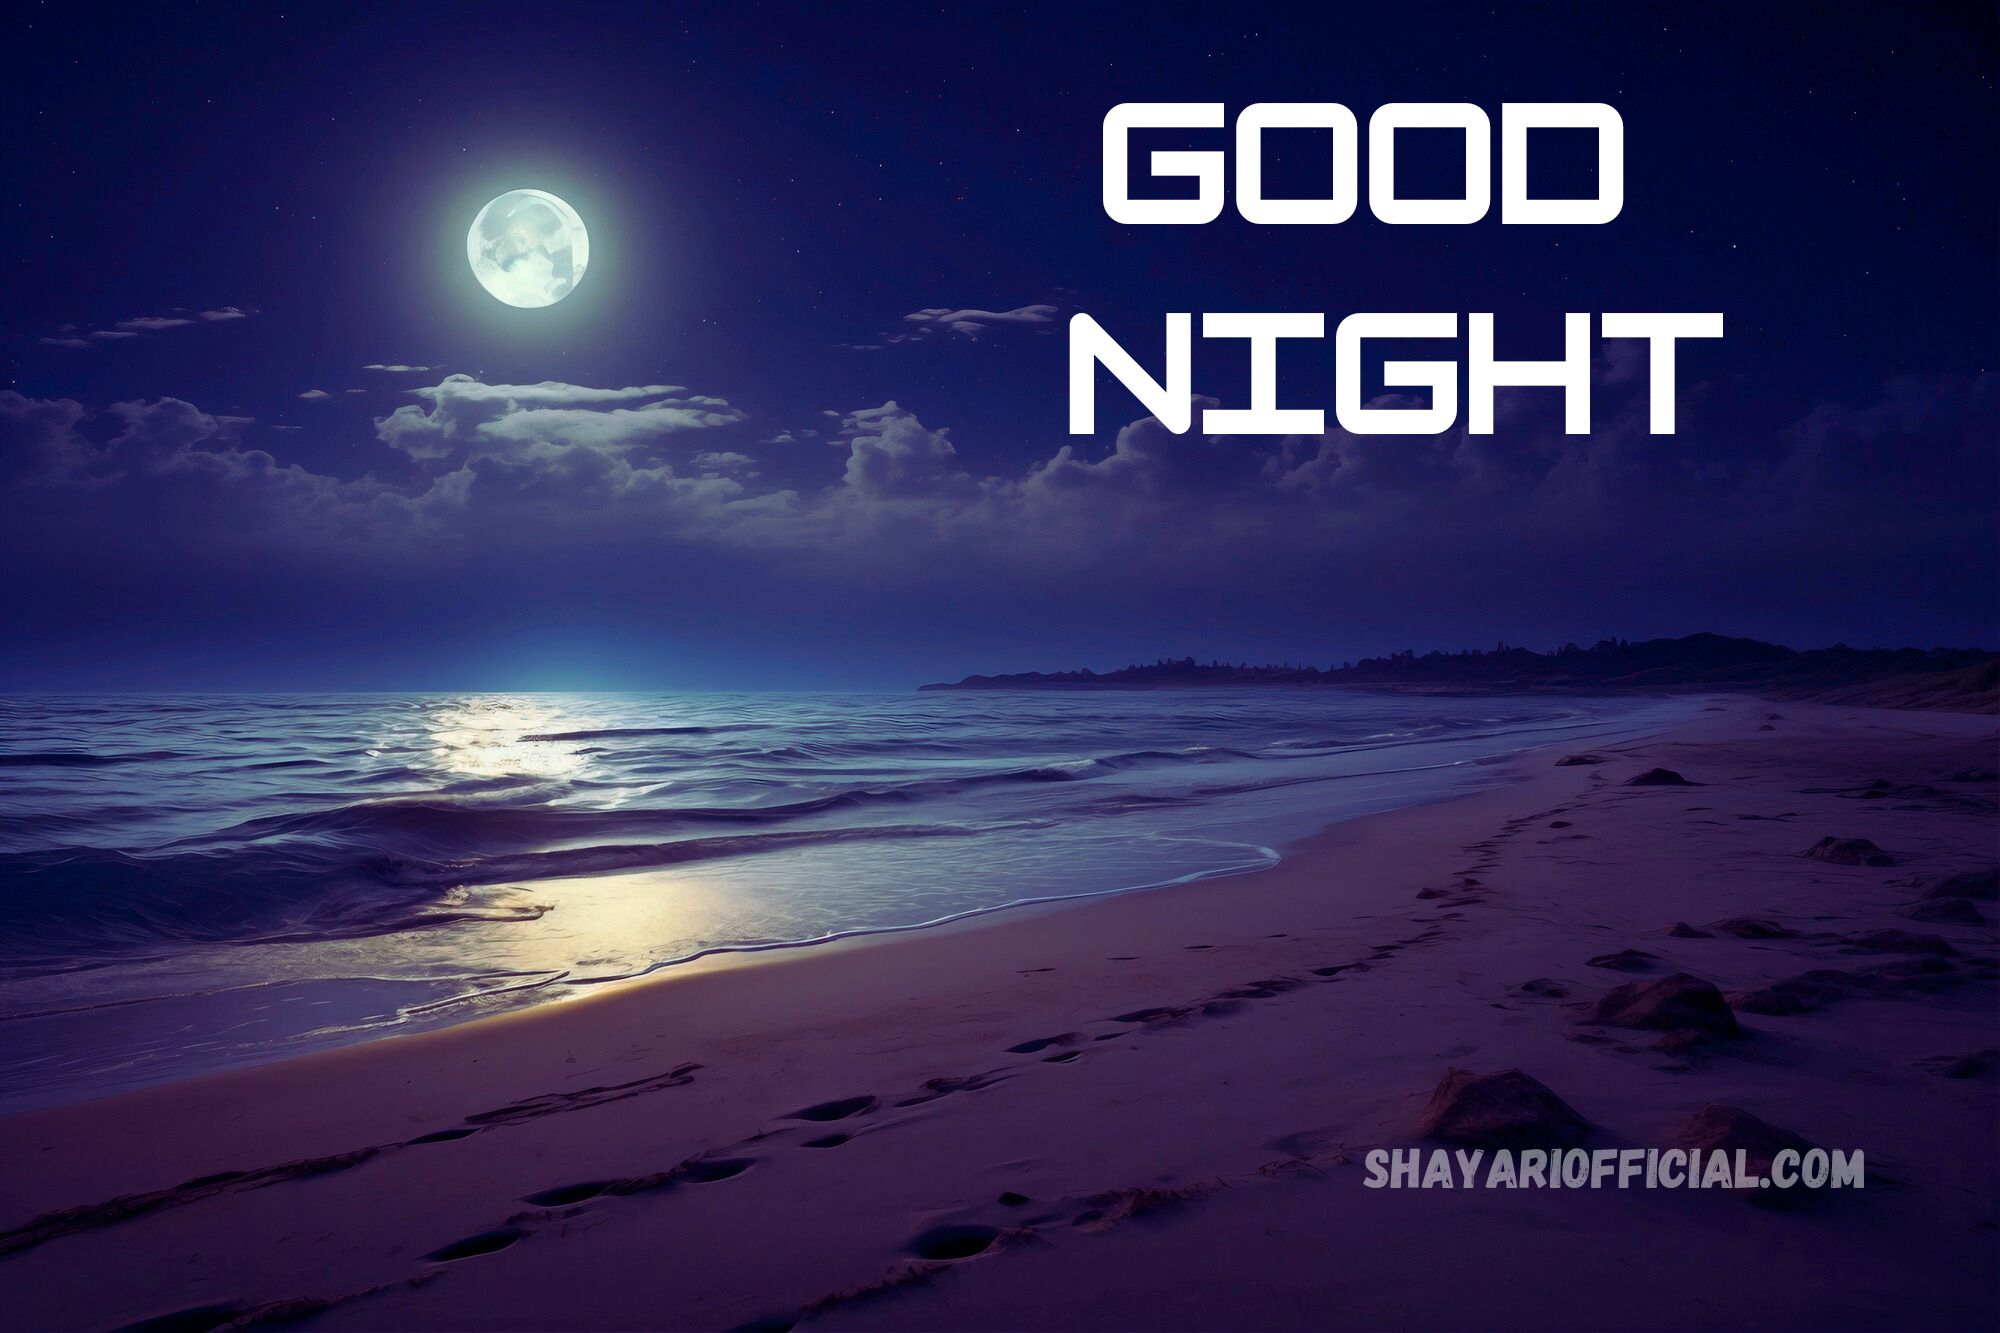 Good Night Shayari in English